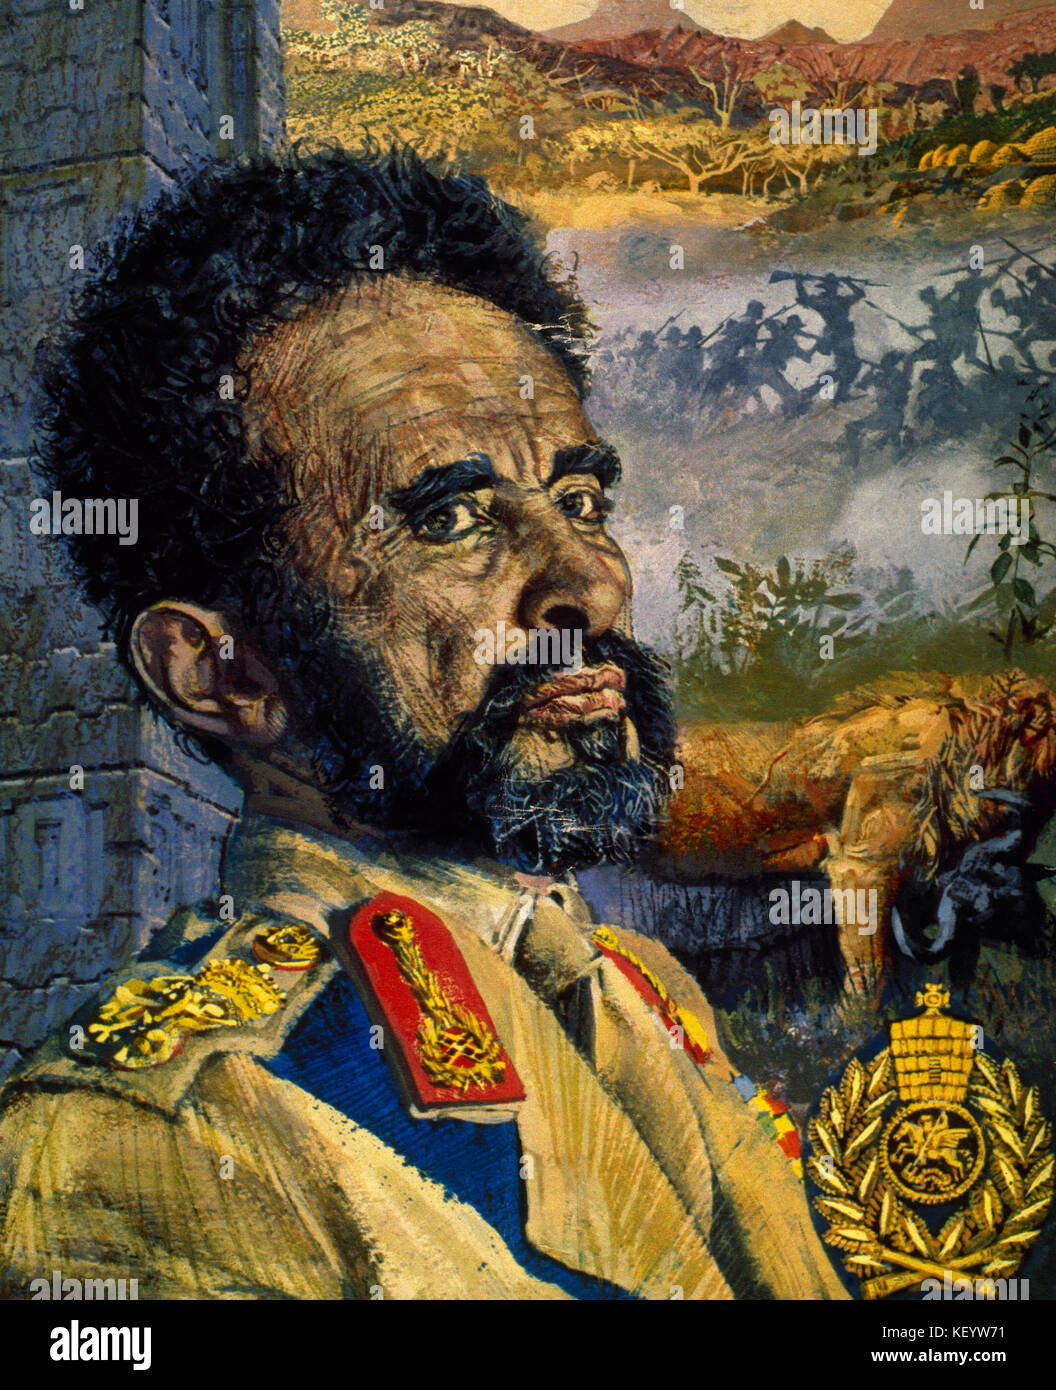 Haile Selassie I (1892-1975). L'Éthiopie a regent (1916-1930) et empereur (1930-1974). Il a été membre de la dynastie de Salomon. portrait. L'aquarelle. Banque D'Images